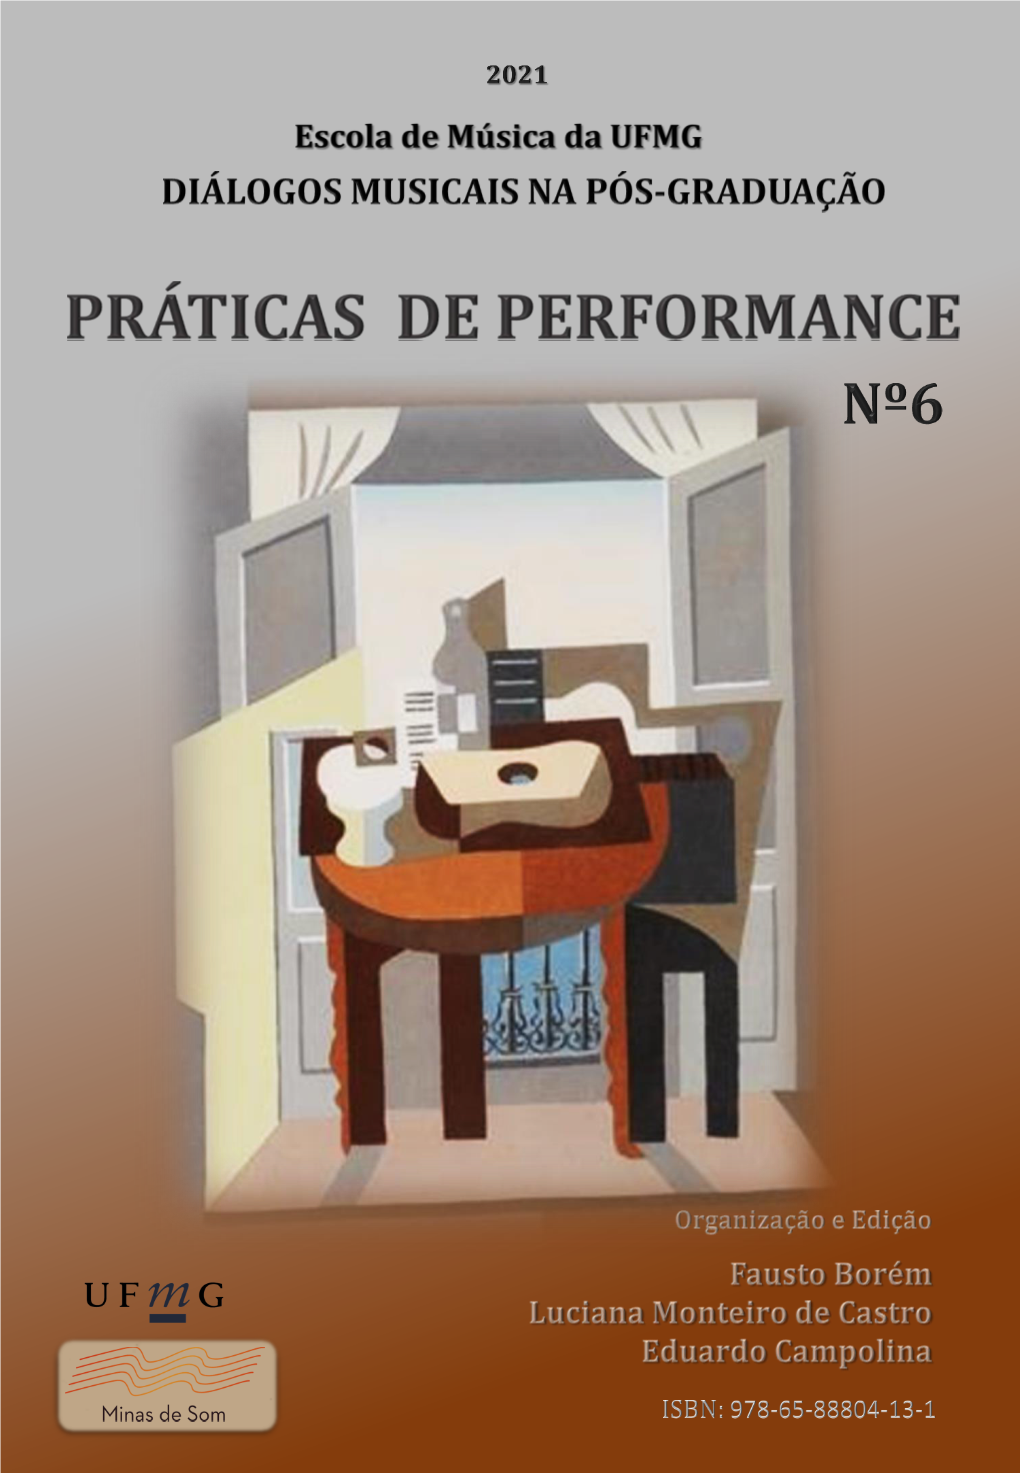 Associações Entre Verano Porteño, De Astor Piazzolla, E O Quadro Juno, De Gerhard Richter